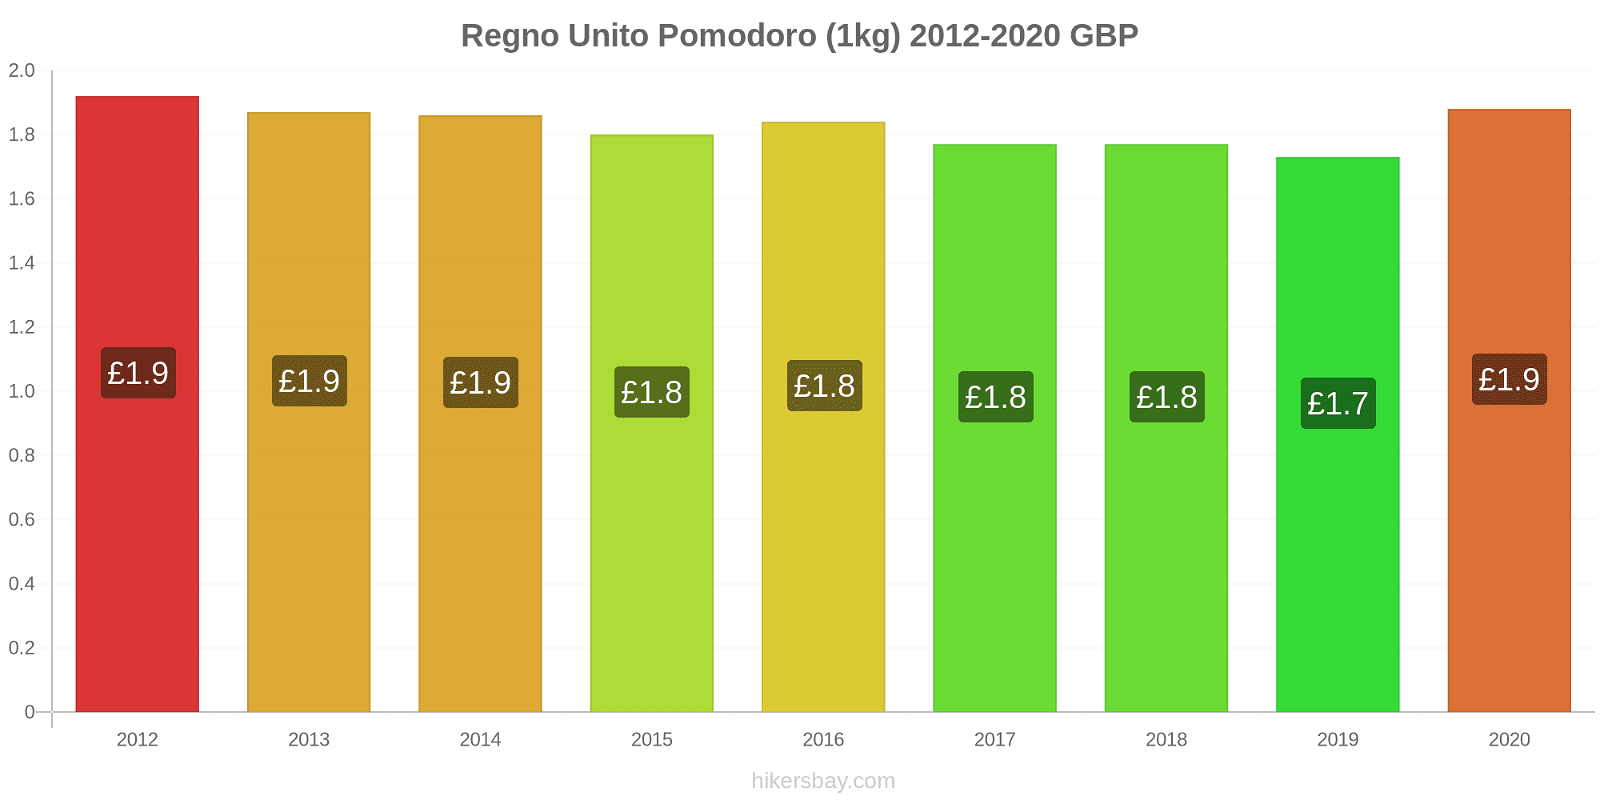 Regno Unito variazioni di prezzo Pomodoro (1kg) hikersbay.com